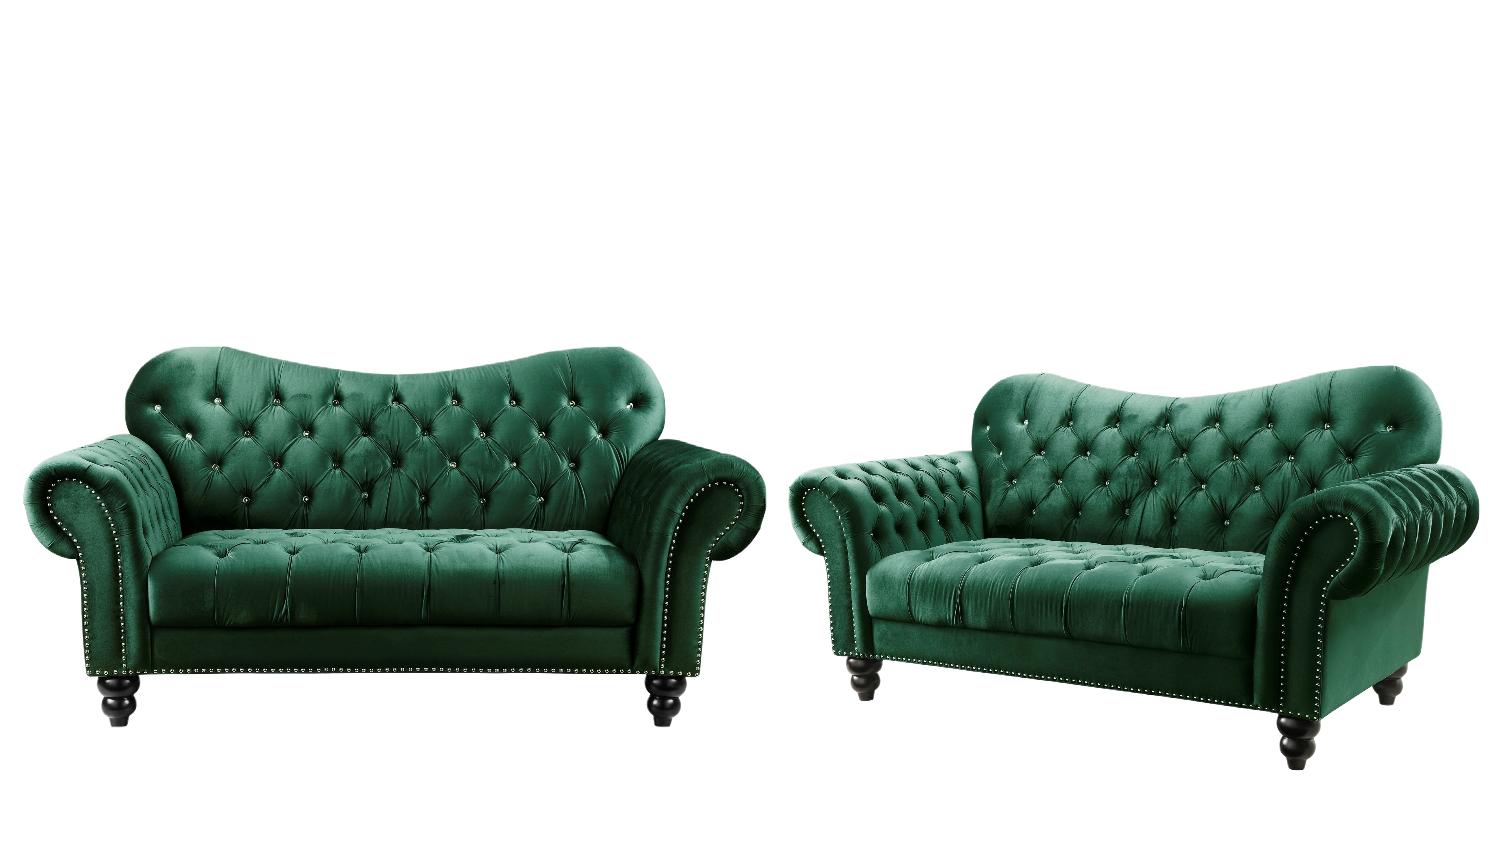 Modern, Classic Sofa and Loveseat Set Iberis 53400-2pcs in Green Velvet